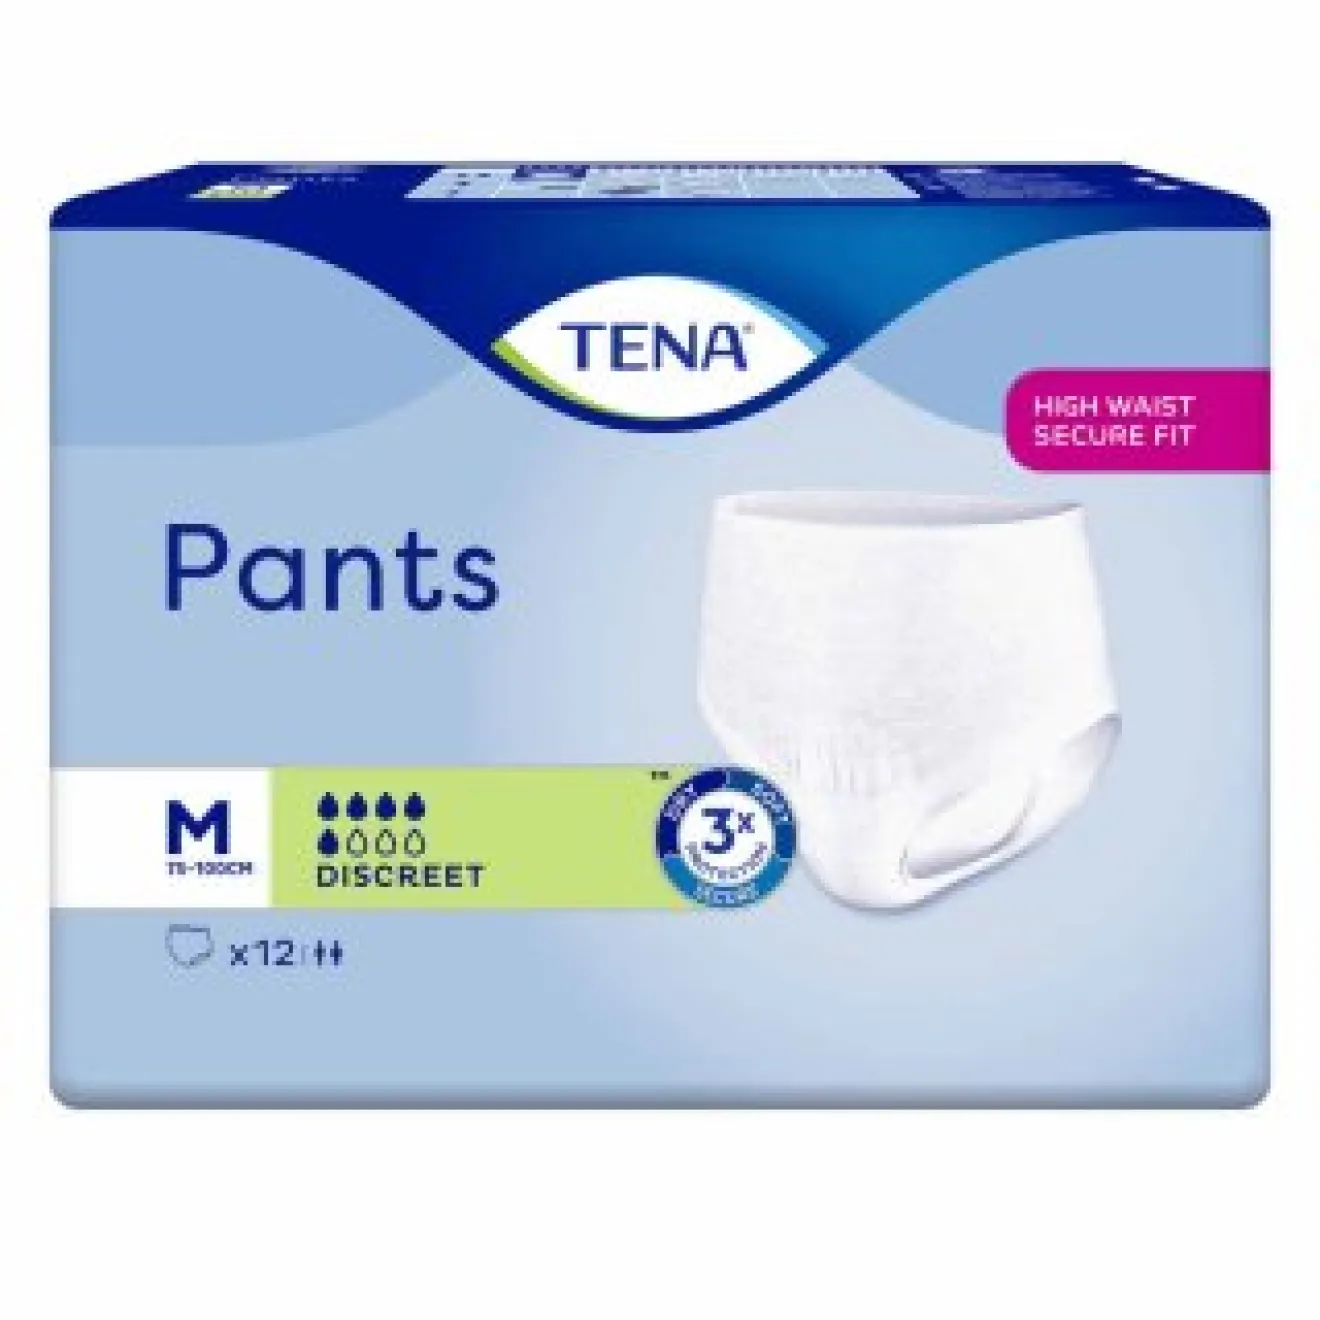 TENA Pants Discreet medium 12 ST